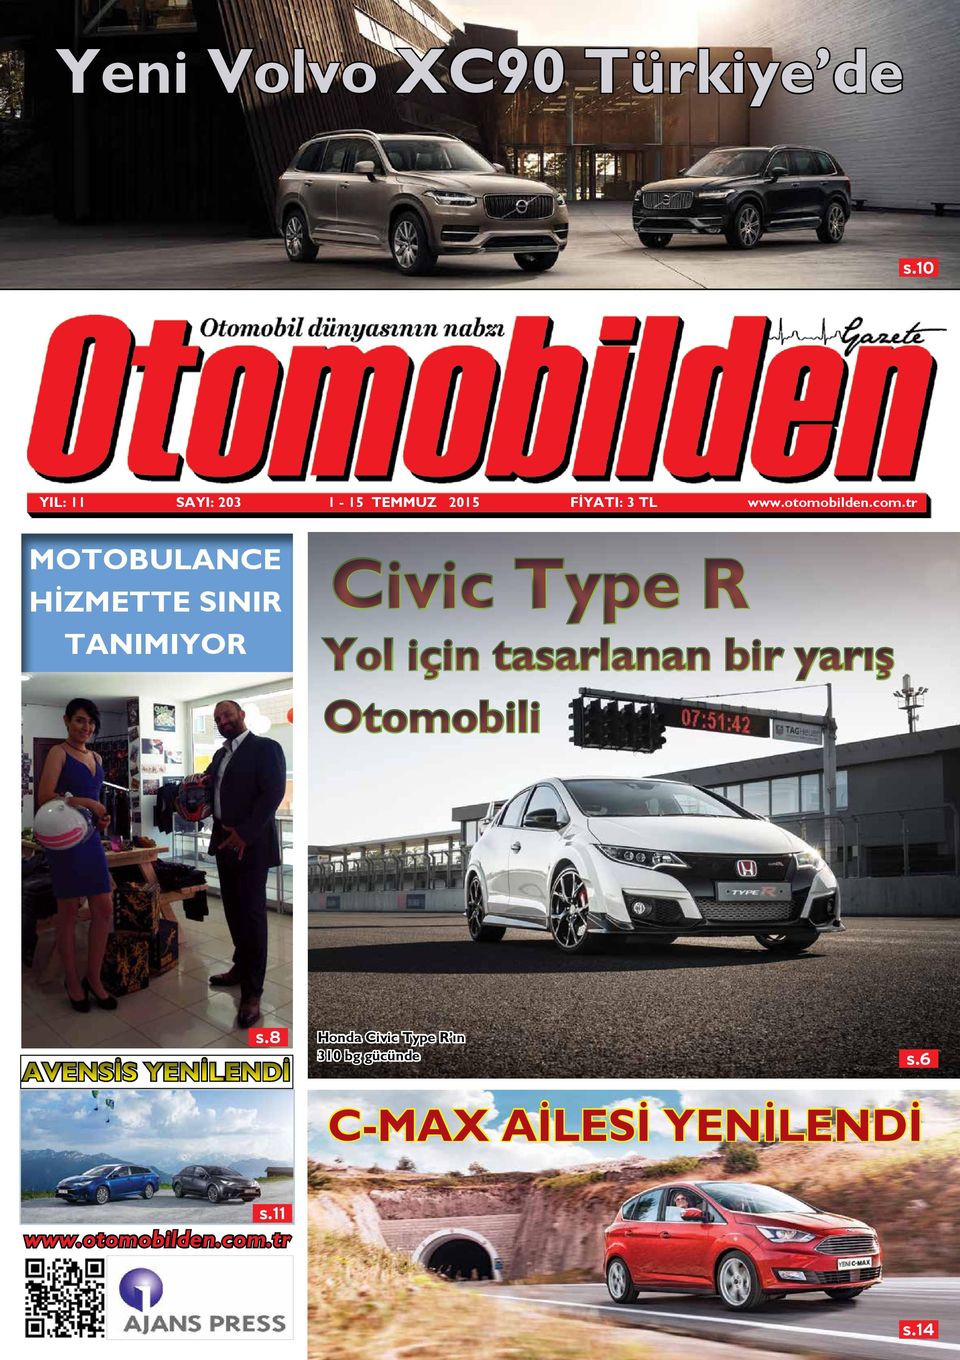 tr MOTOBULANCE HİZMETTE SINIR TANIMIYOR Civic Type R Yol için tasarlanan